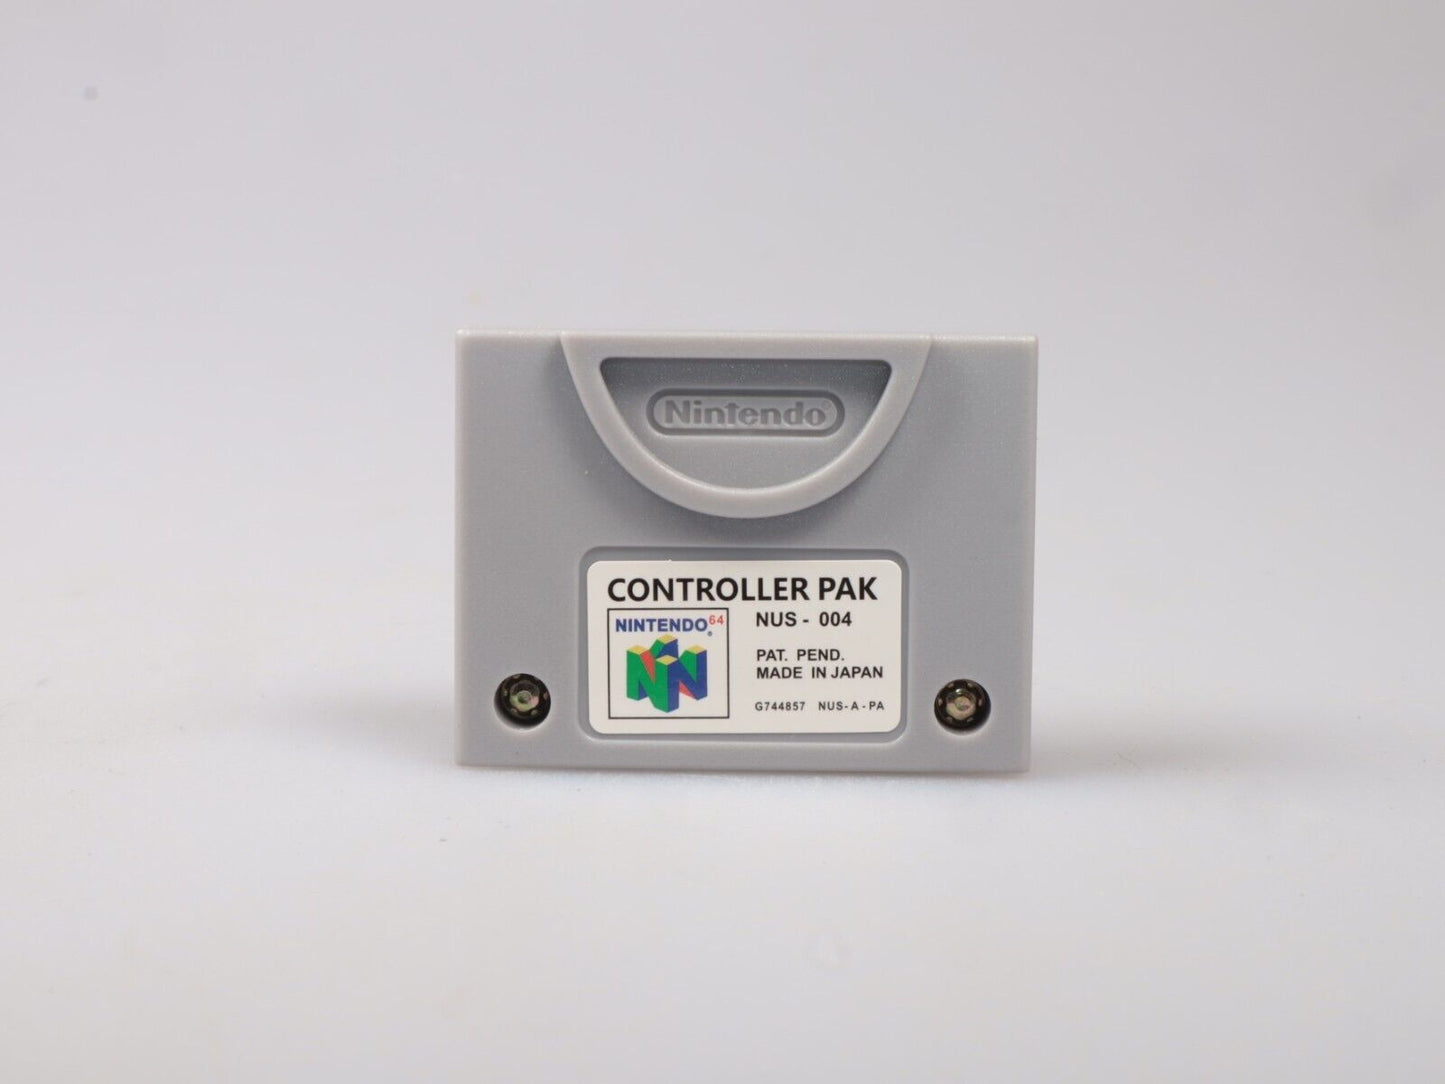 N64 | Nintendo 64 Controller Pak | Boxed | Official Nintendo 64